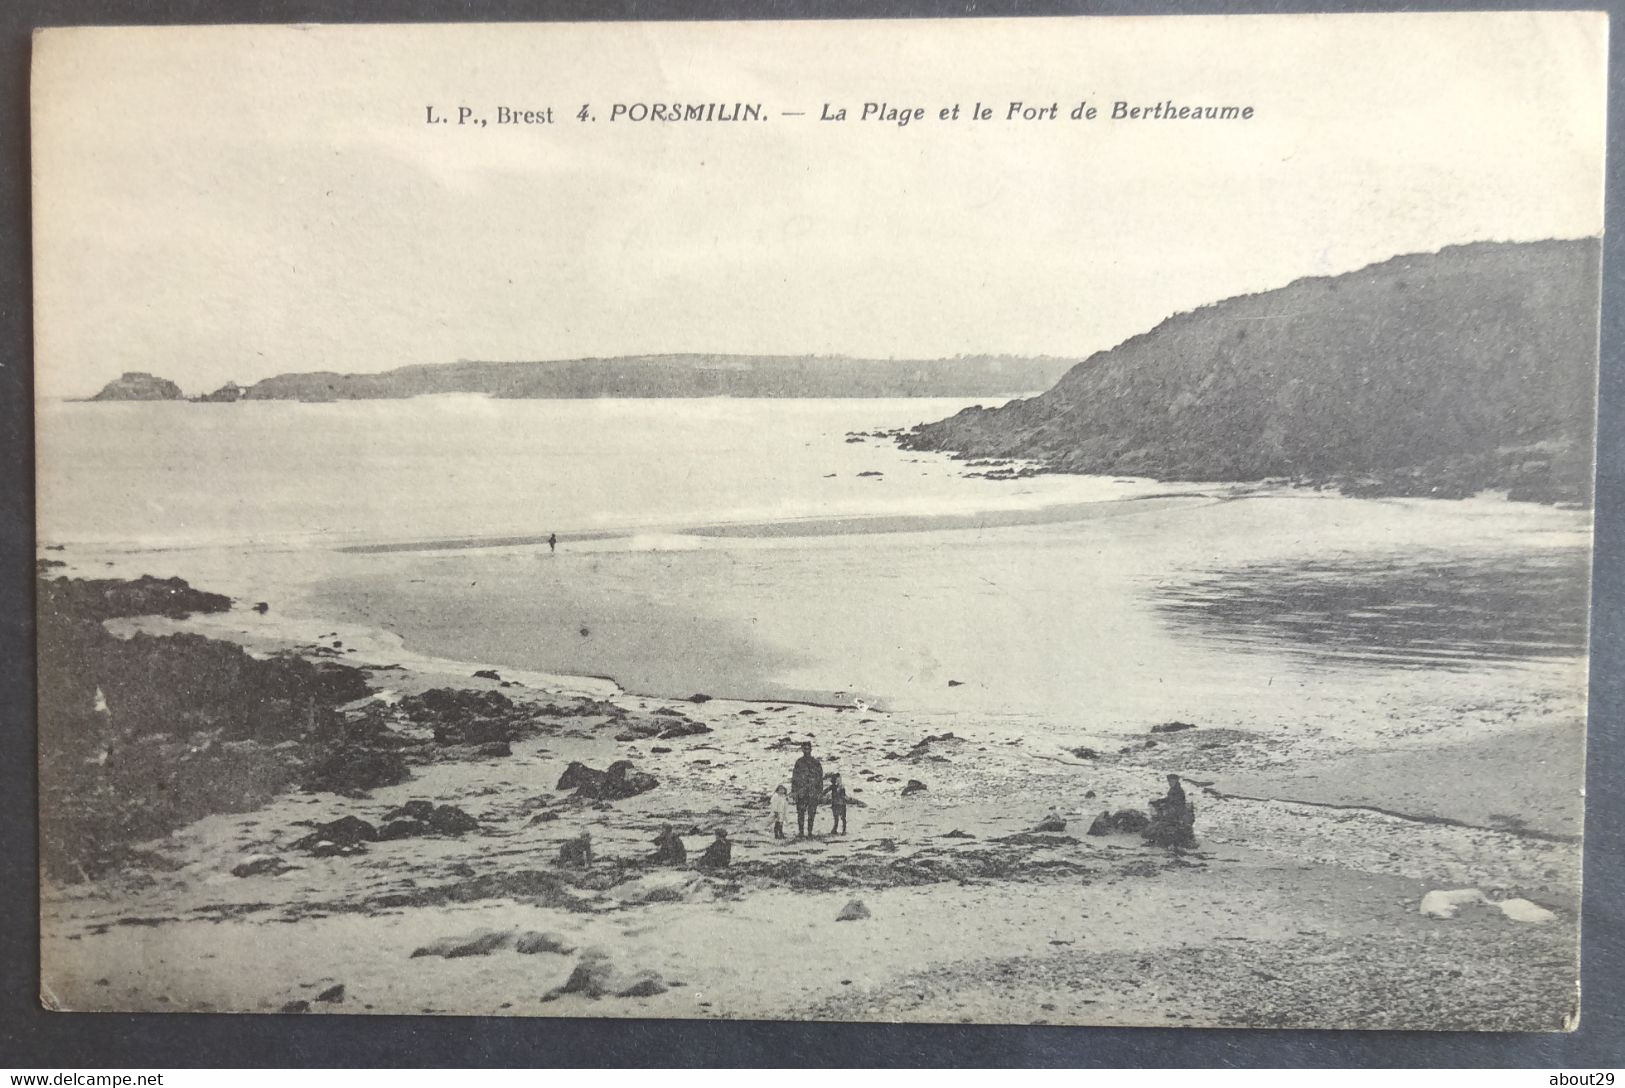 CPA 29 PORSMILIN ( LOCMARIA PLOUZANE) - La Plage Et Le Fort De Bertheaume - édit. LP Brest 4 - Réf. Q 22 - Brest